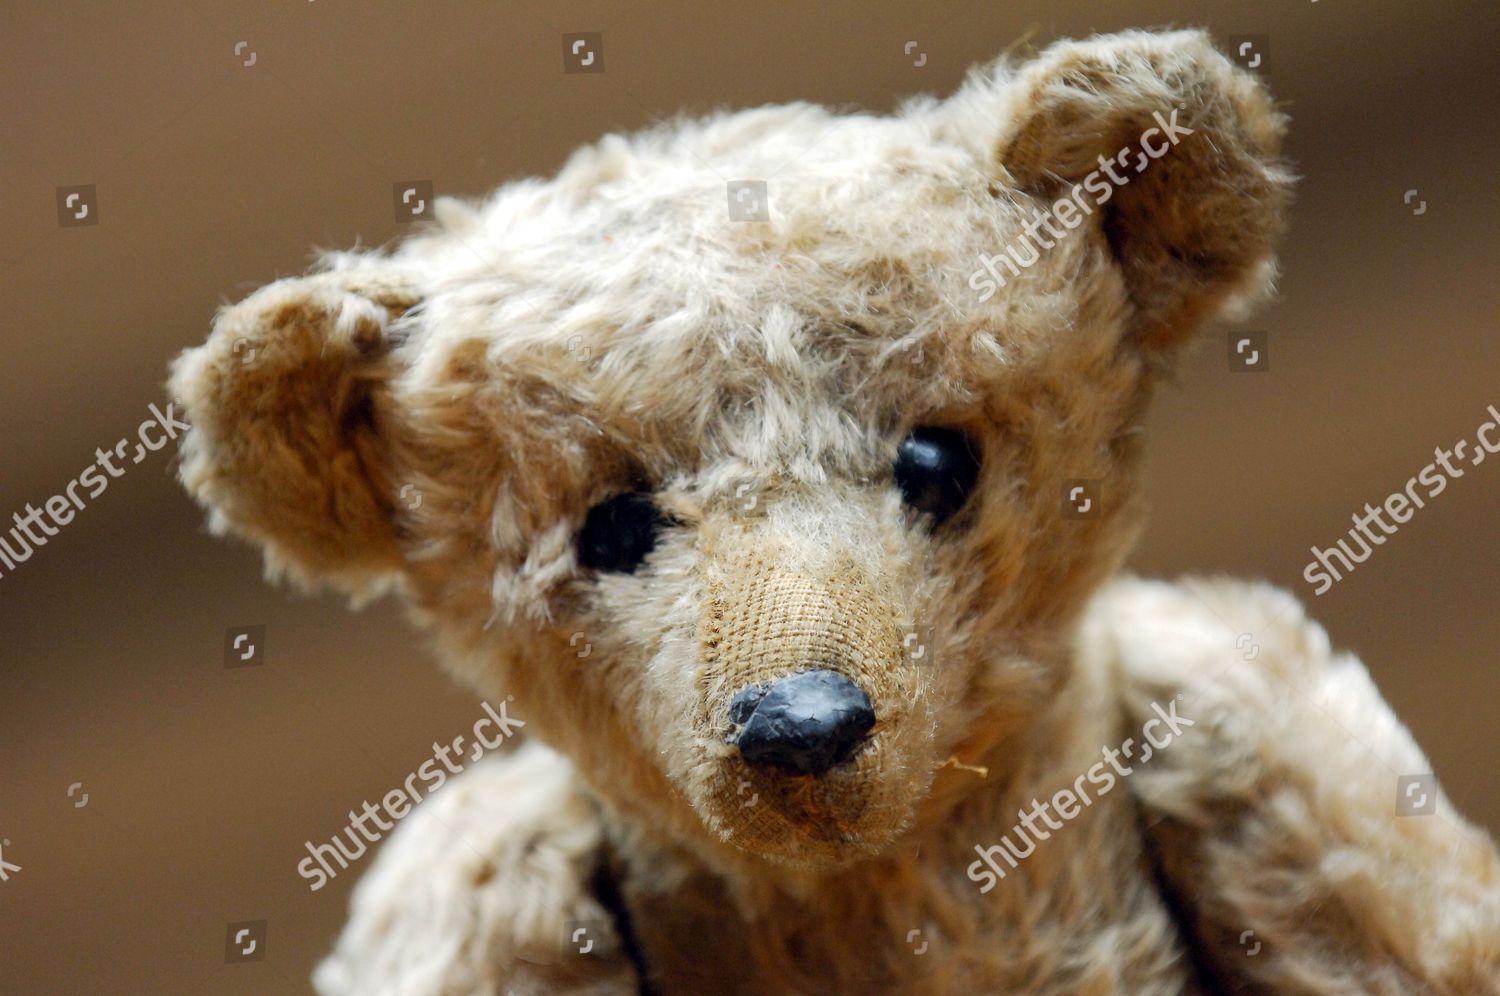 oldest teddy bear